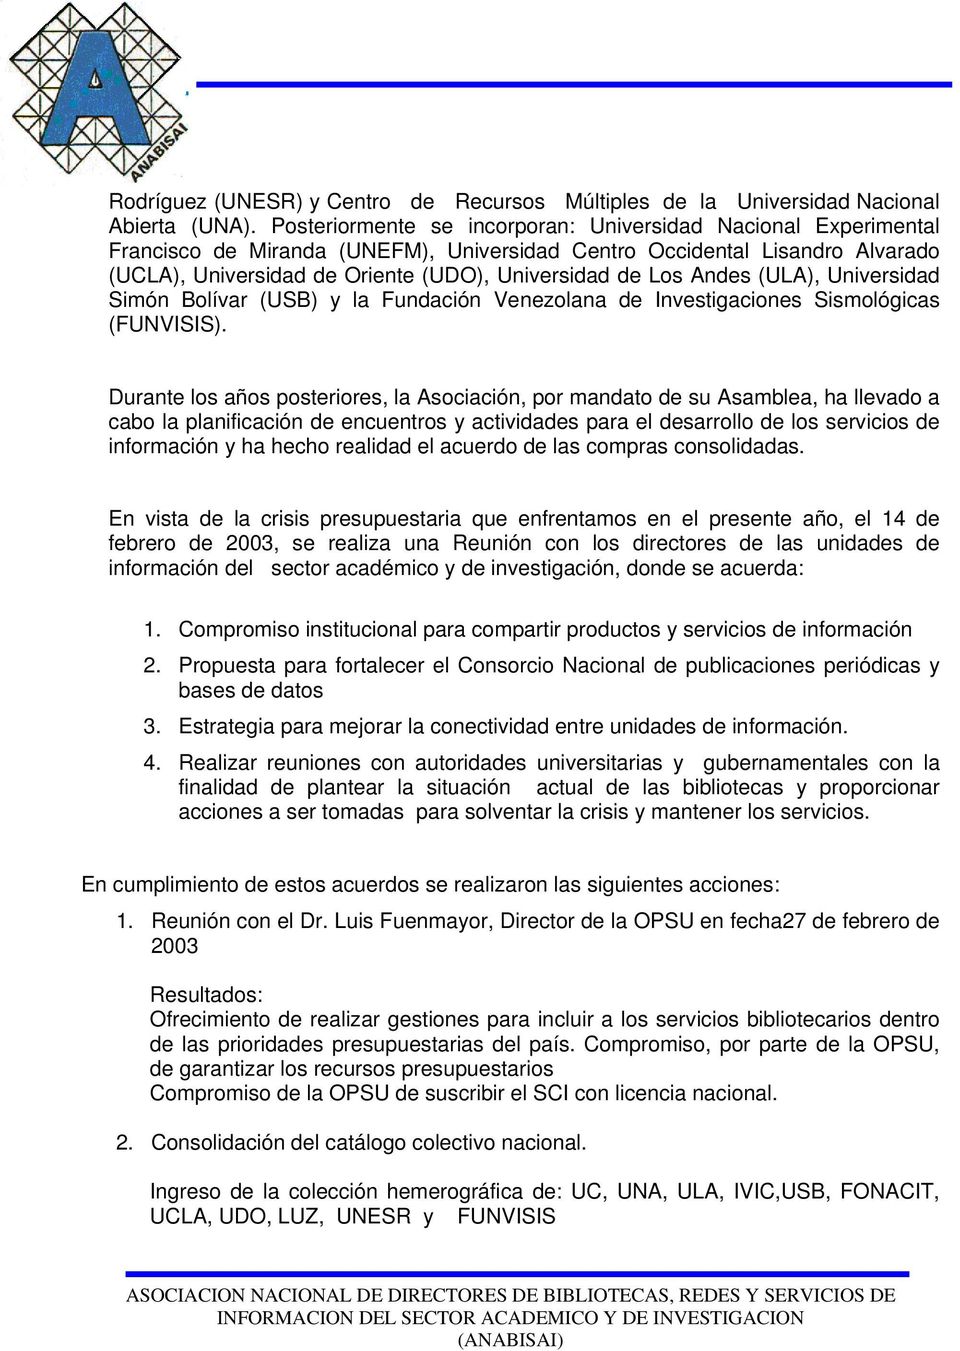 Andes (ULA), Universidad Simón Bolívar (USB) y la Fundación Venezolana de Investigaciones Sismológicas (FUNVISIS).